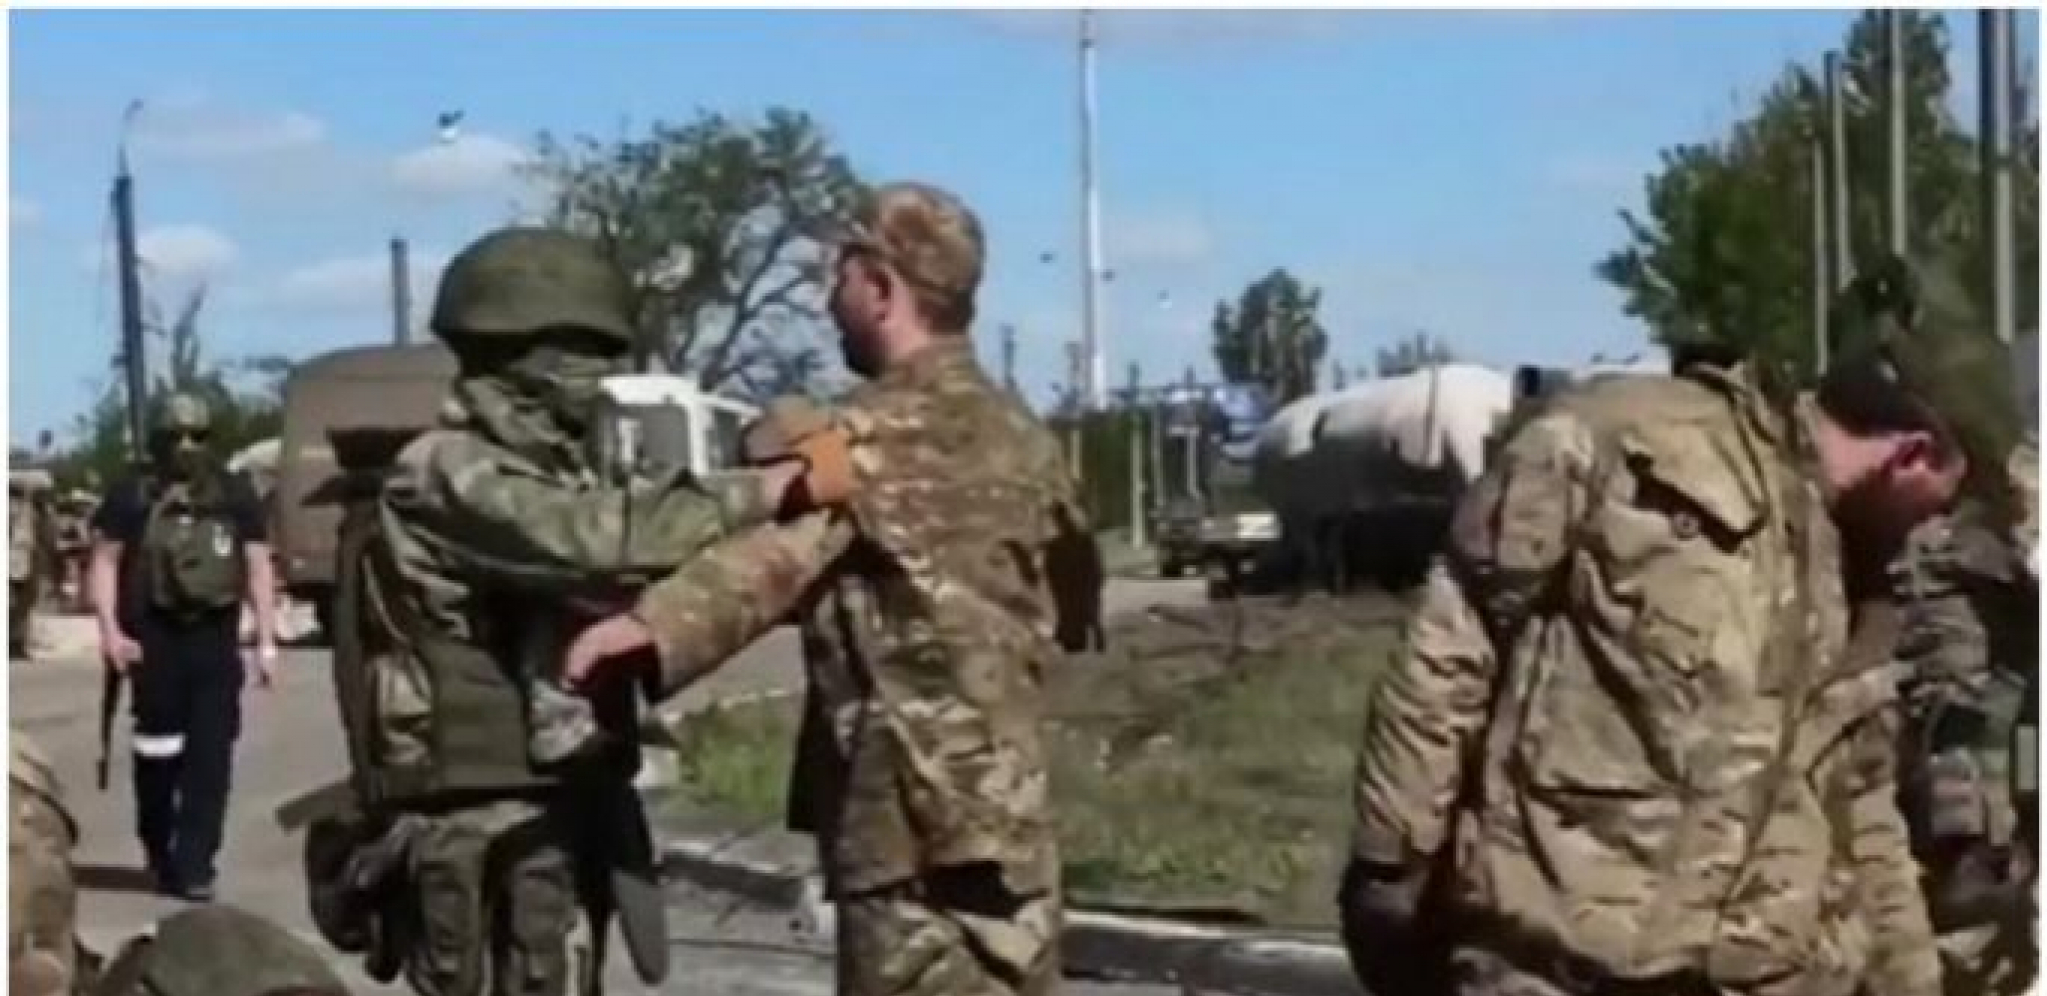 ZAUZIMANJE AZOVSTALJA NIJE PROŠLO BEZ KRVI Ubijeno 6 ukrajinskih vojnika, pokušali da dignu u vazduh skladište municije pre predaje